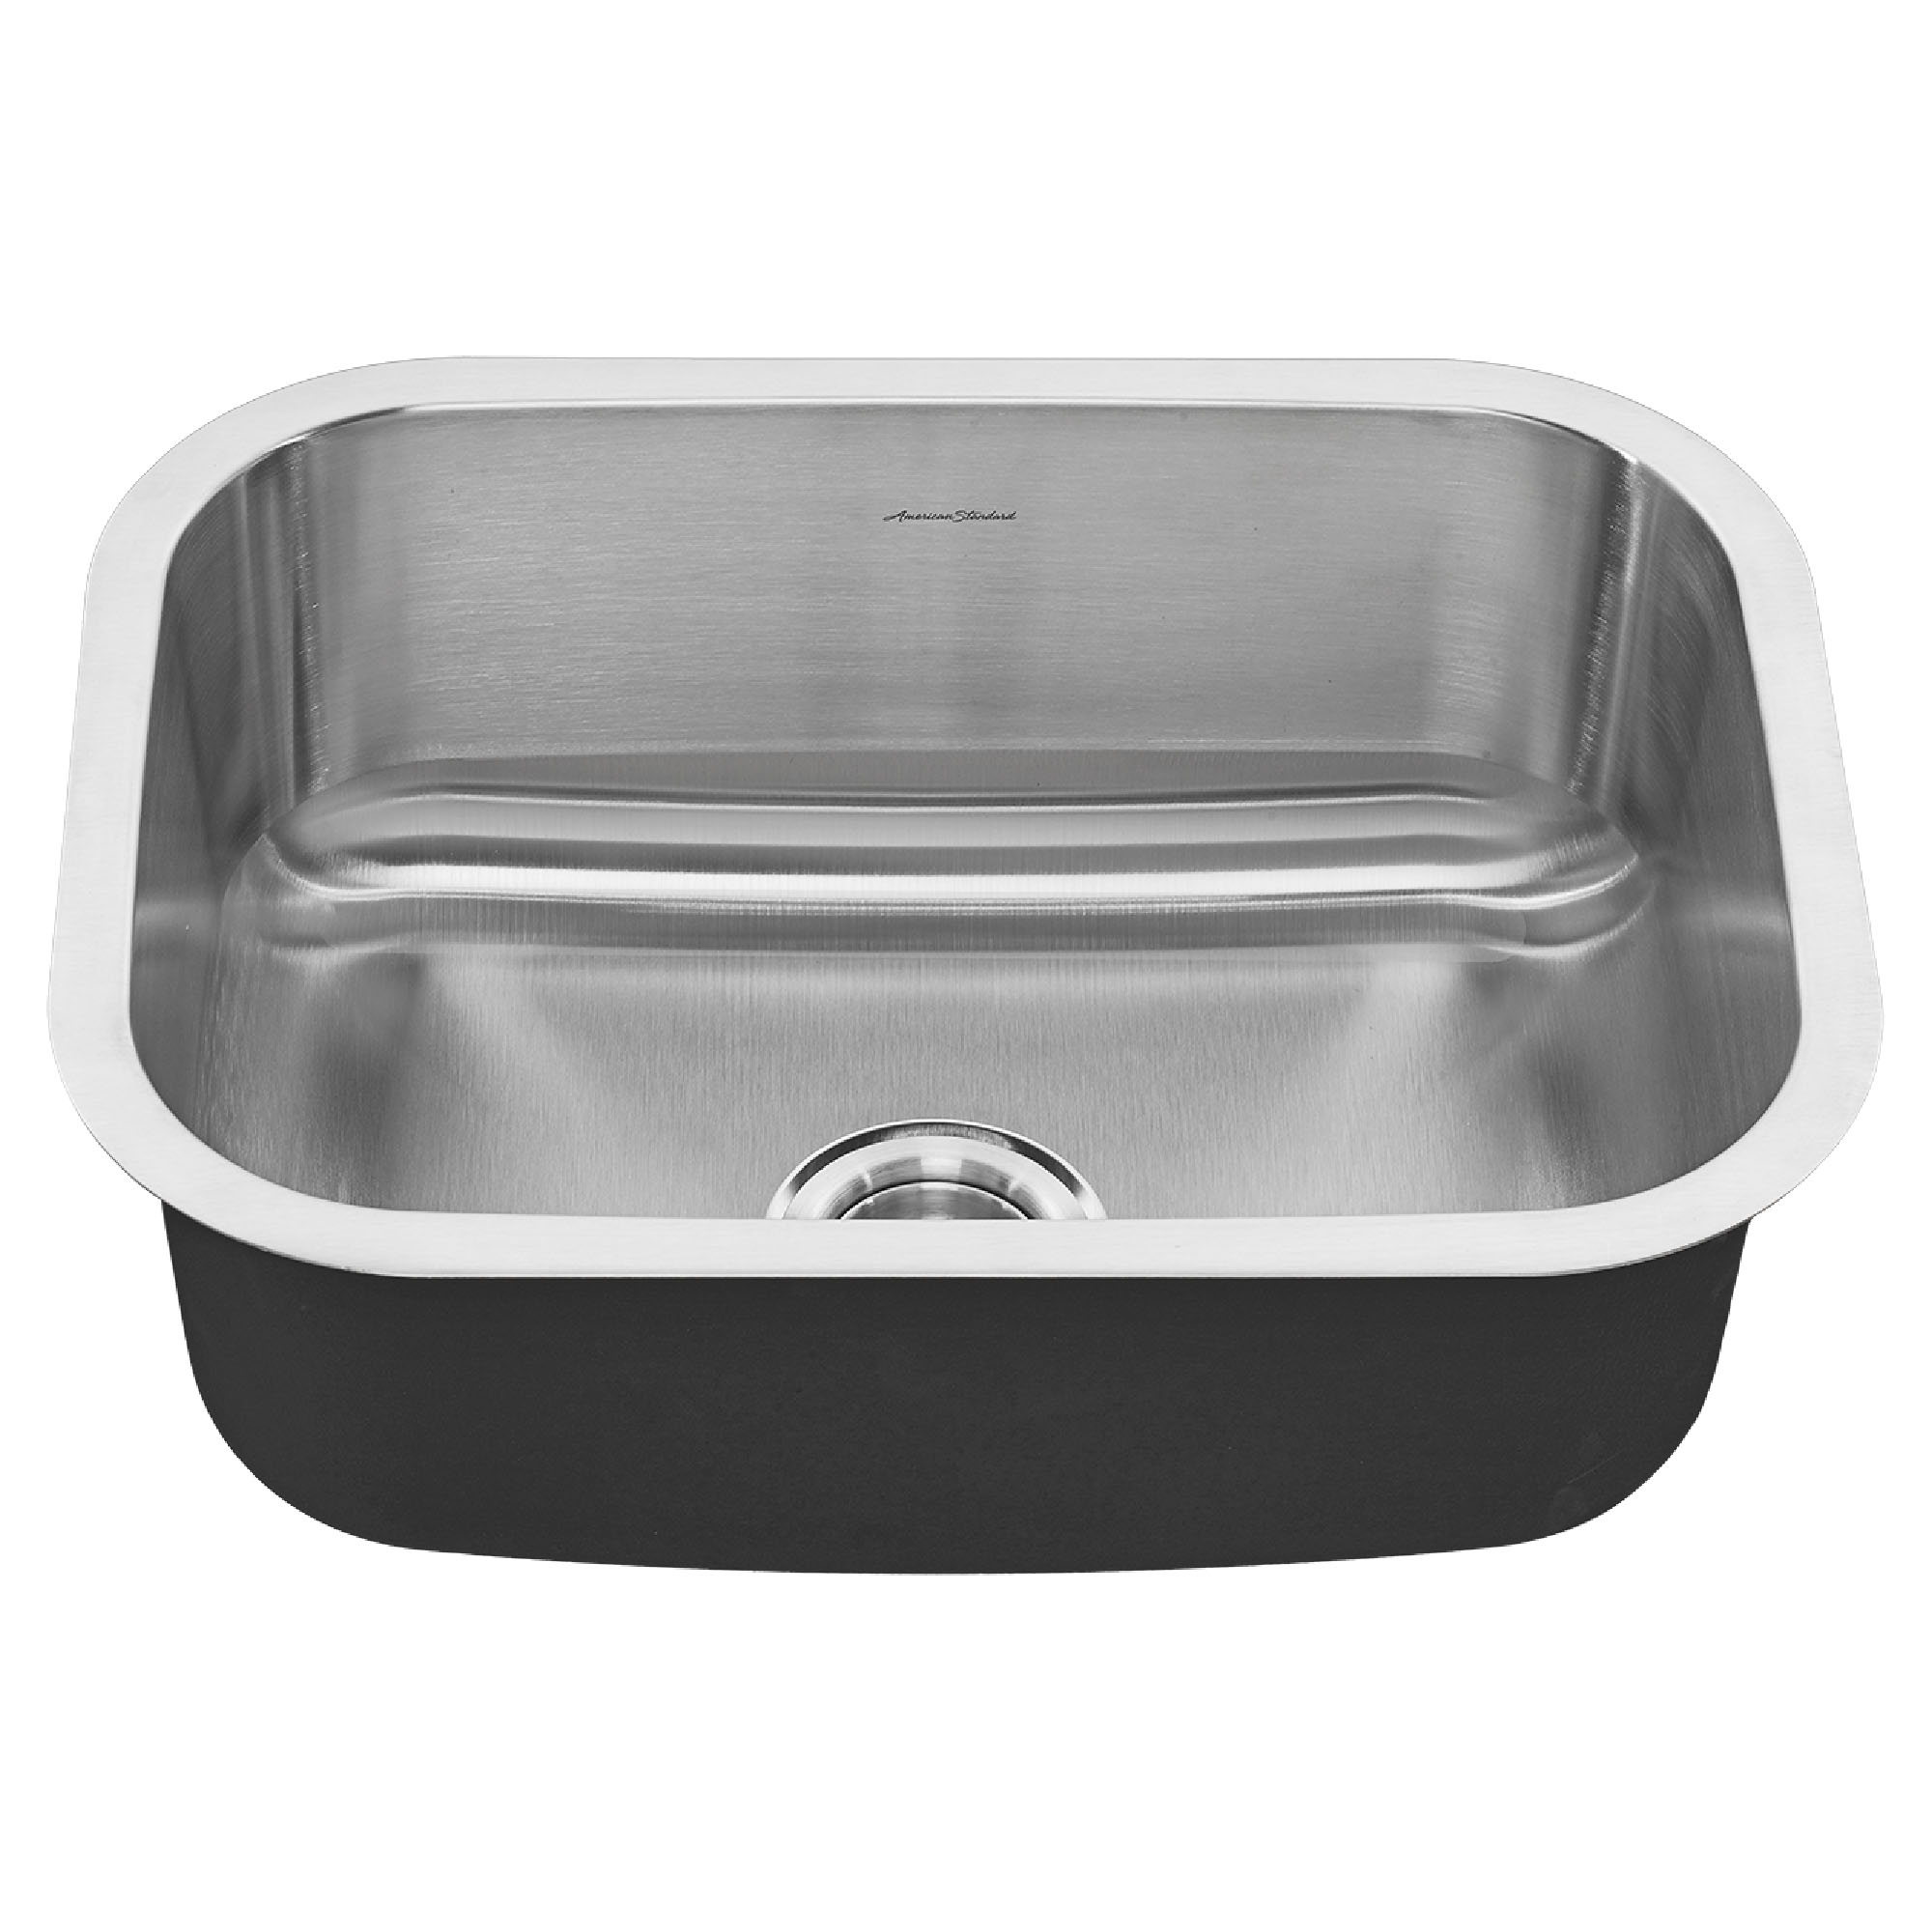 Portsmouth™ 23 x 18-Inch Stainless Steel Undermount Single Bowl Kitchen Sink